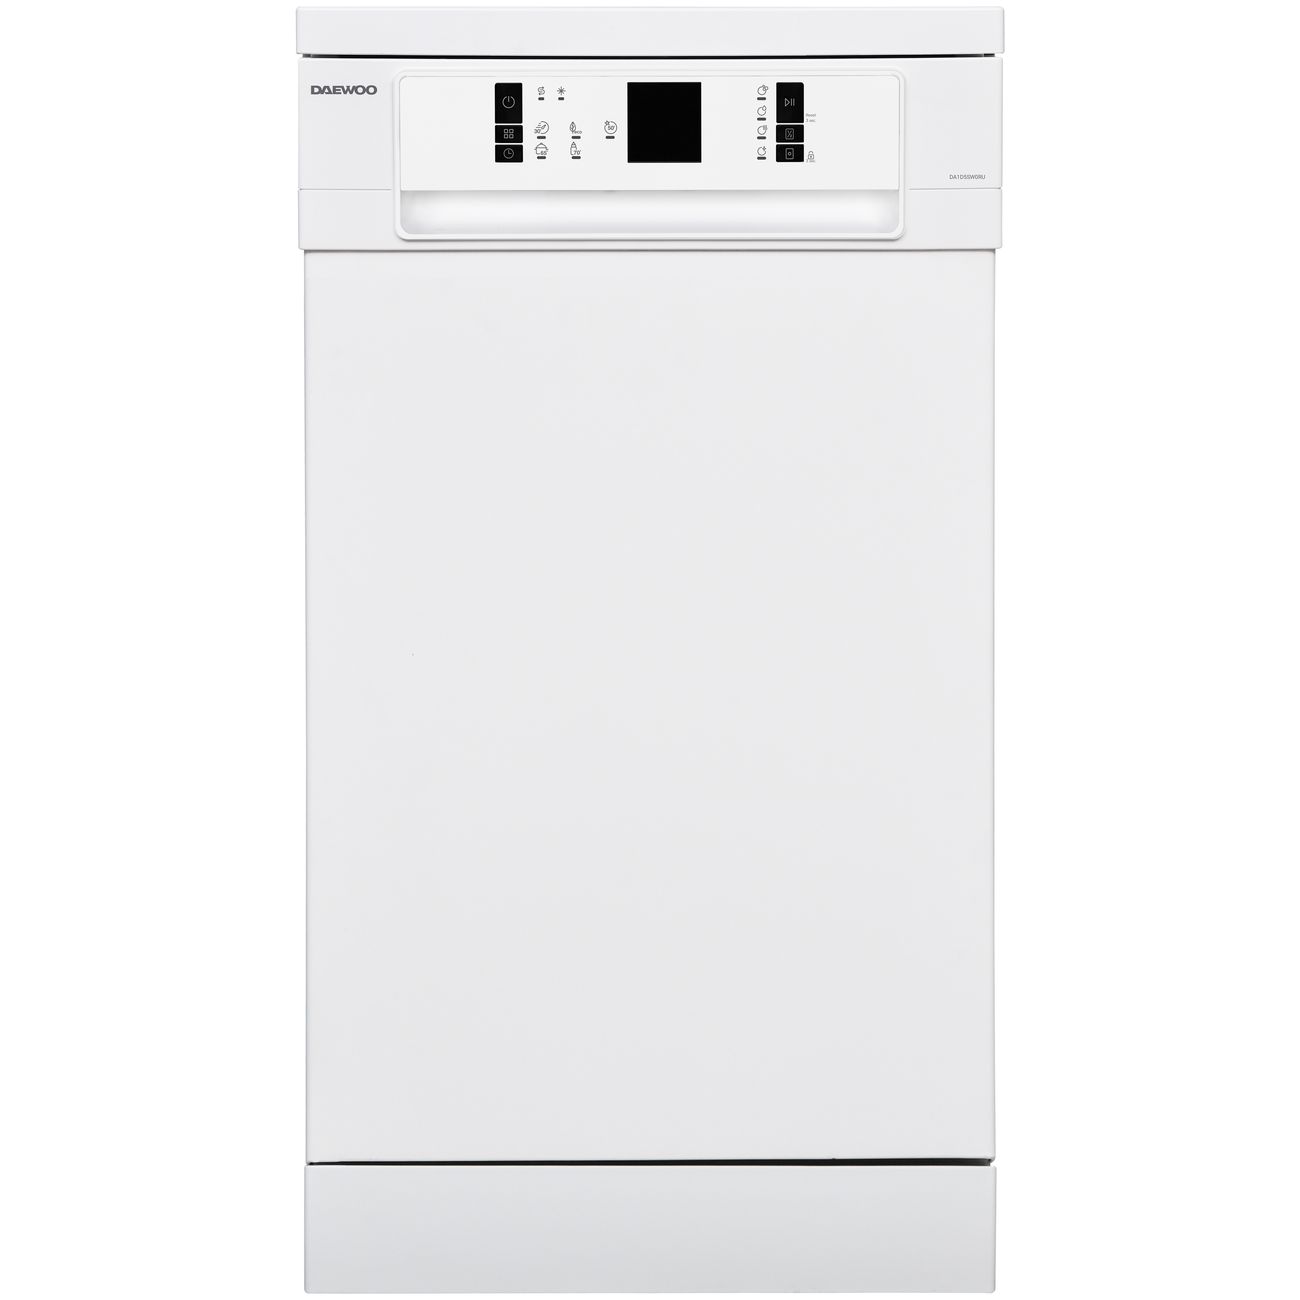 Посудомоечная машина Daewoo DA1D5SW0RU белый держатели для простыни пластиковые d 1 6 × 5 см 12 шт белый